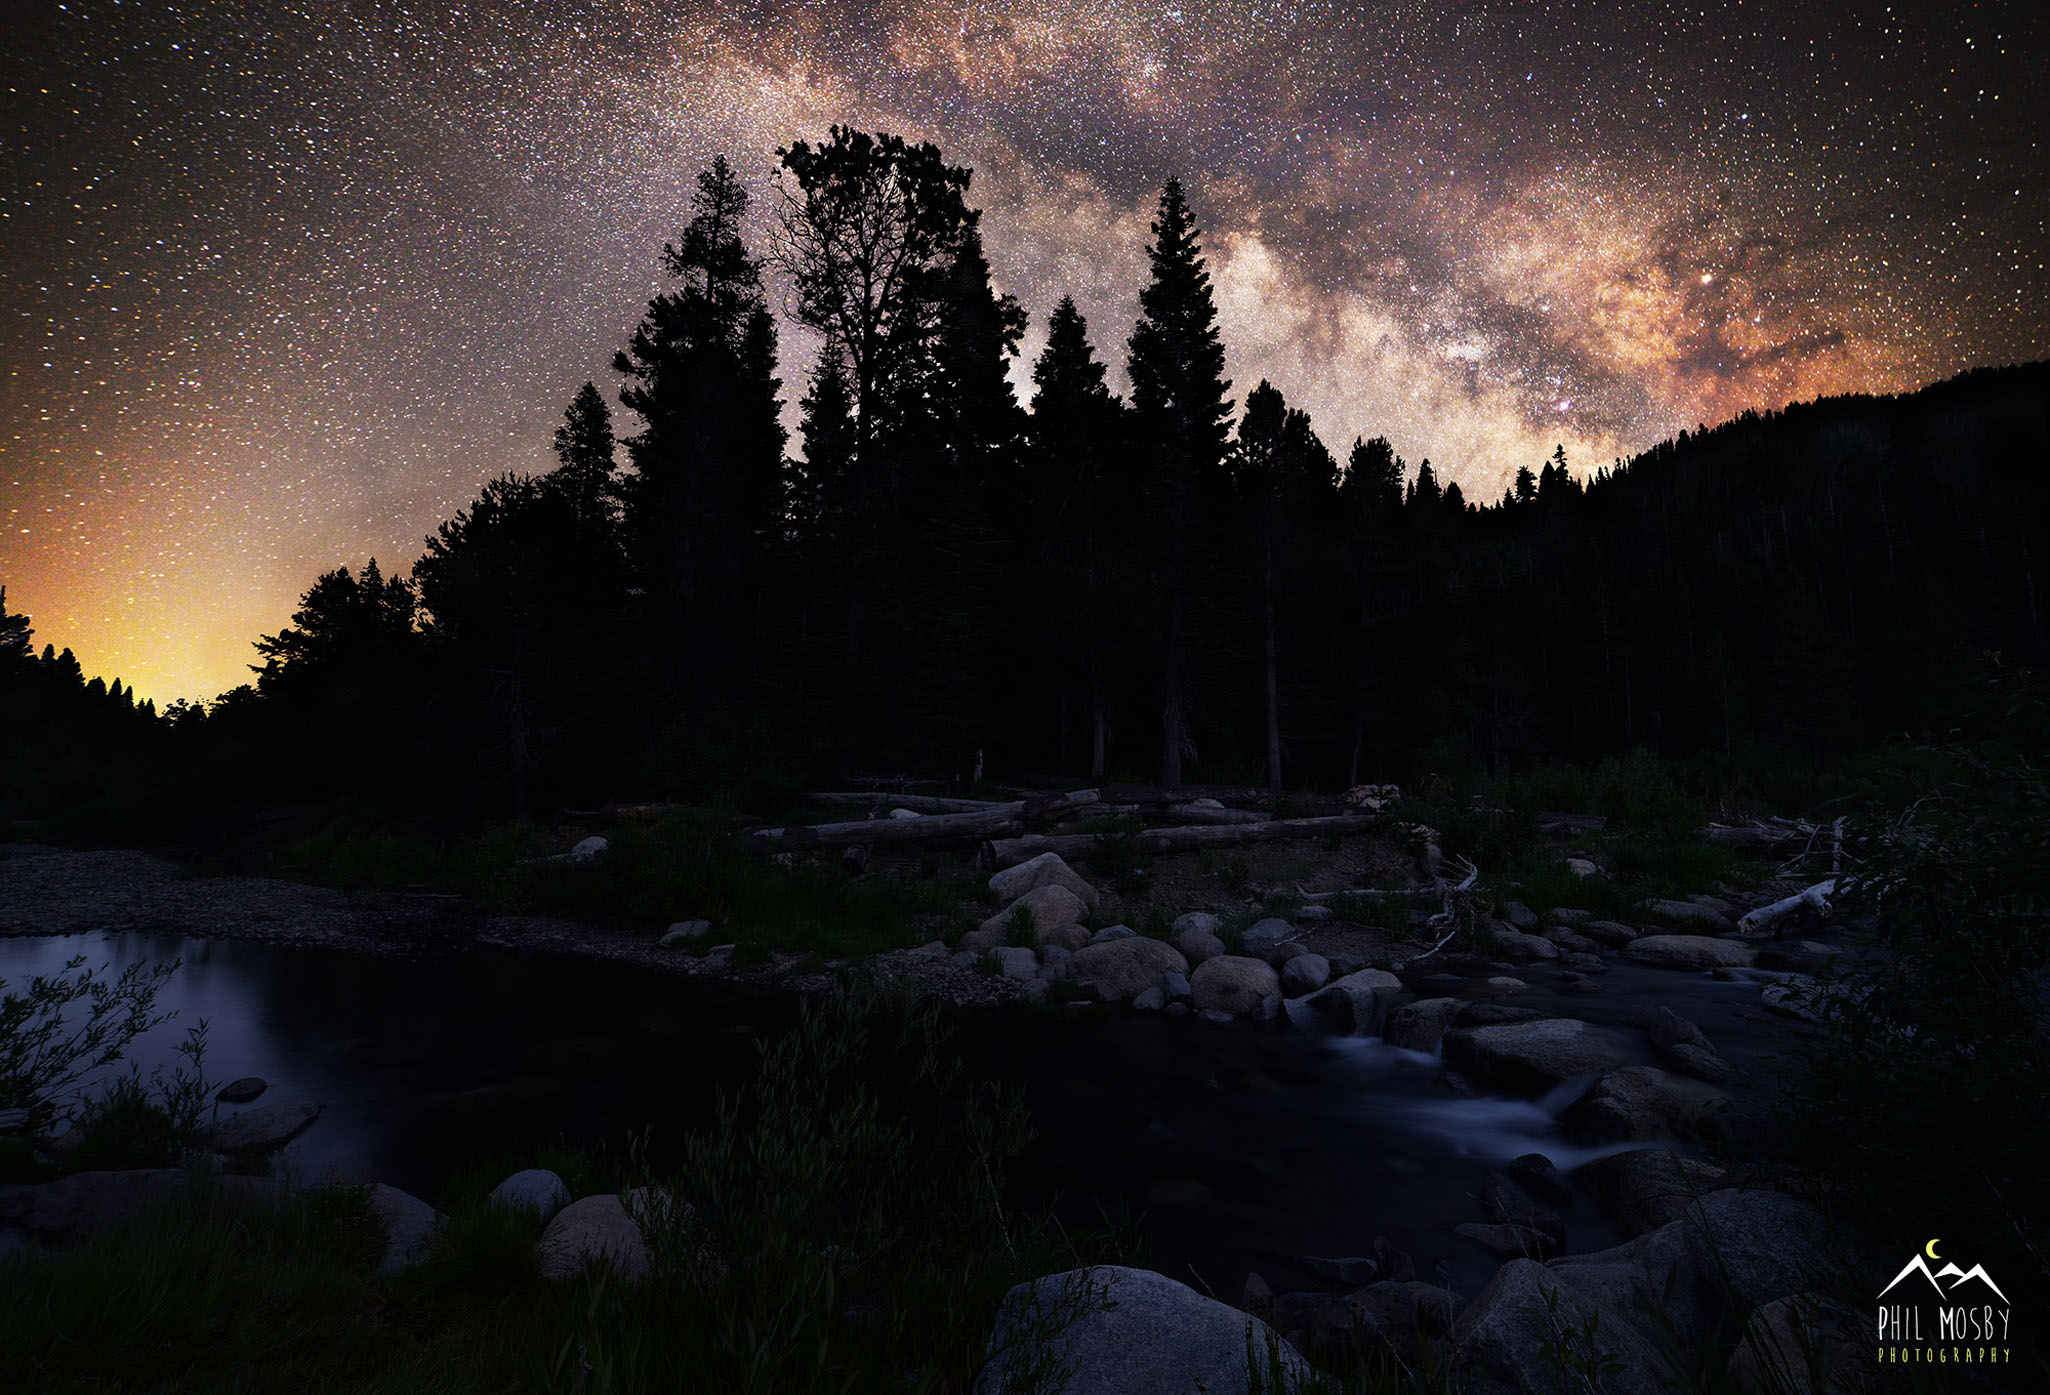 Milky Way over Blackwood Creek, wes